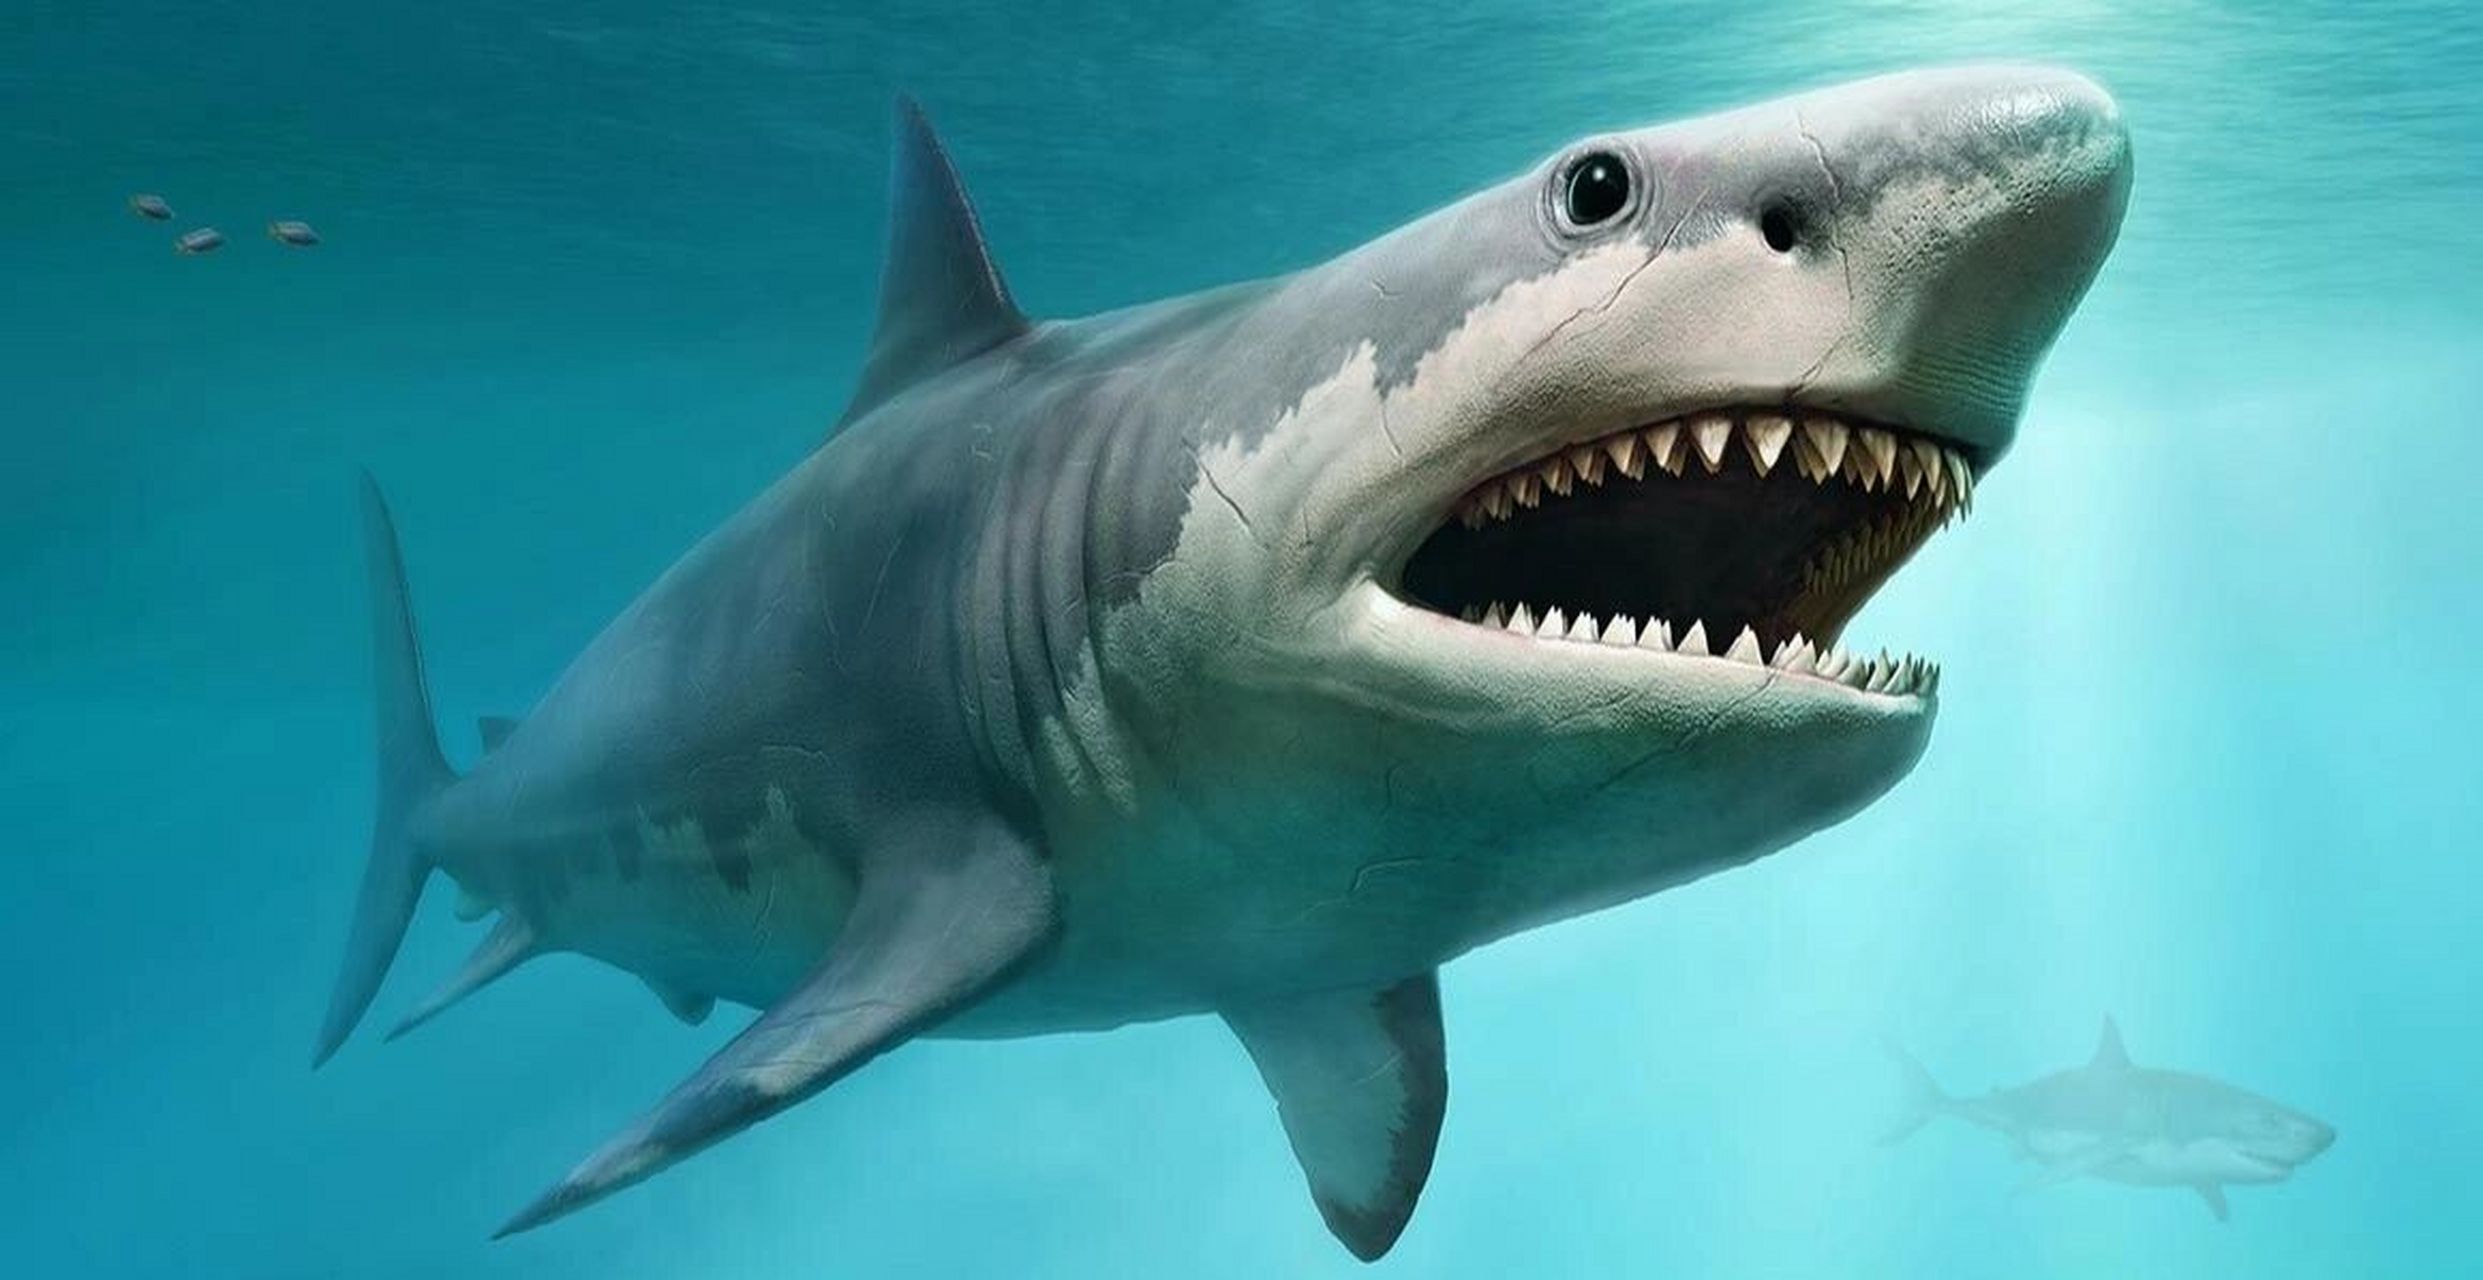 史前巨鲨大揭秘:巨齿鲨的前世今生(上) 今天介绍一种充满神秘感的史前